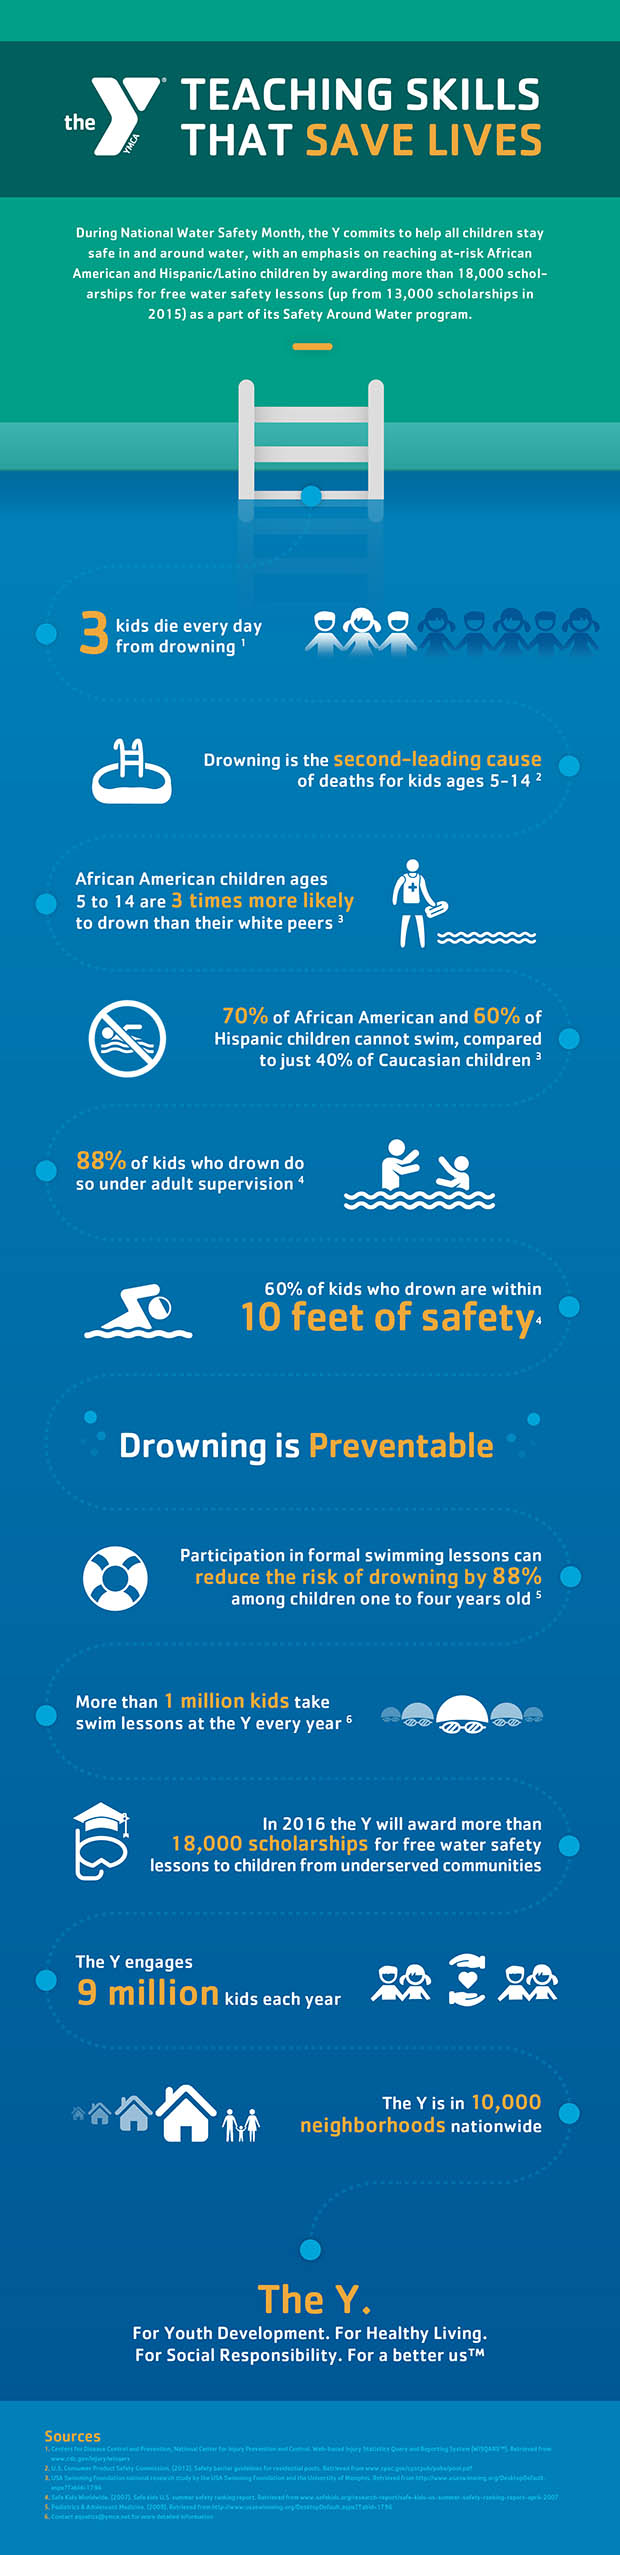 Safety Around Water